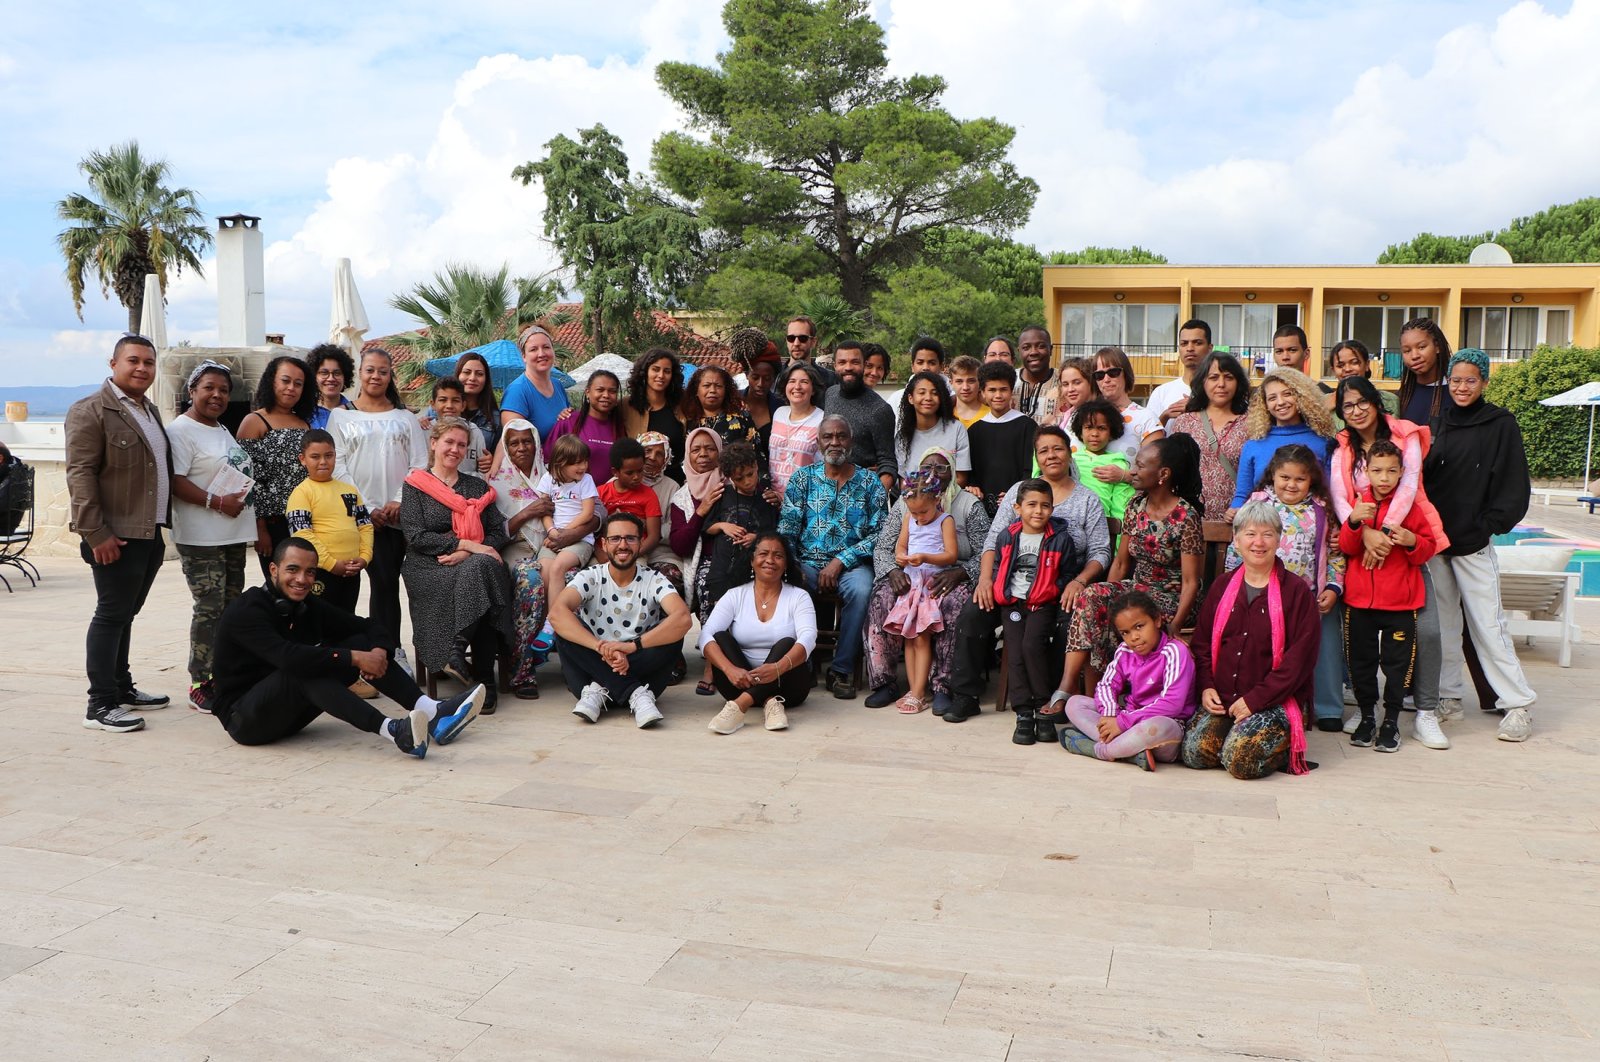 Afro-Turki dari Jerman bertemu di acara budaya tahunan di Izmir